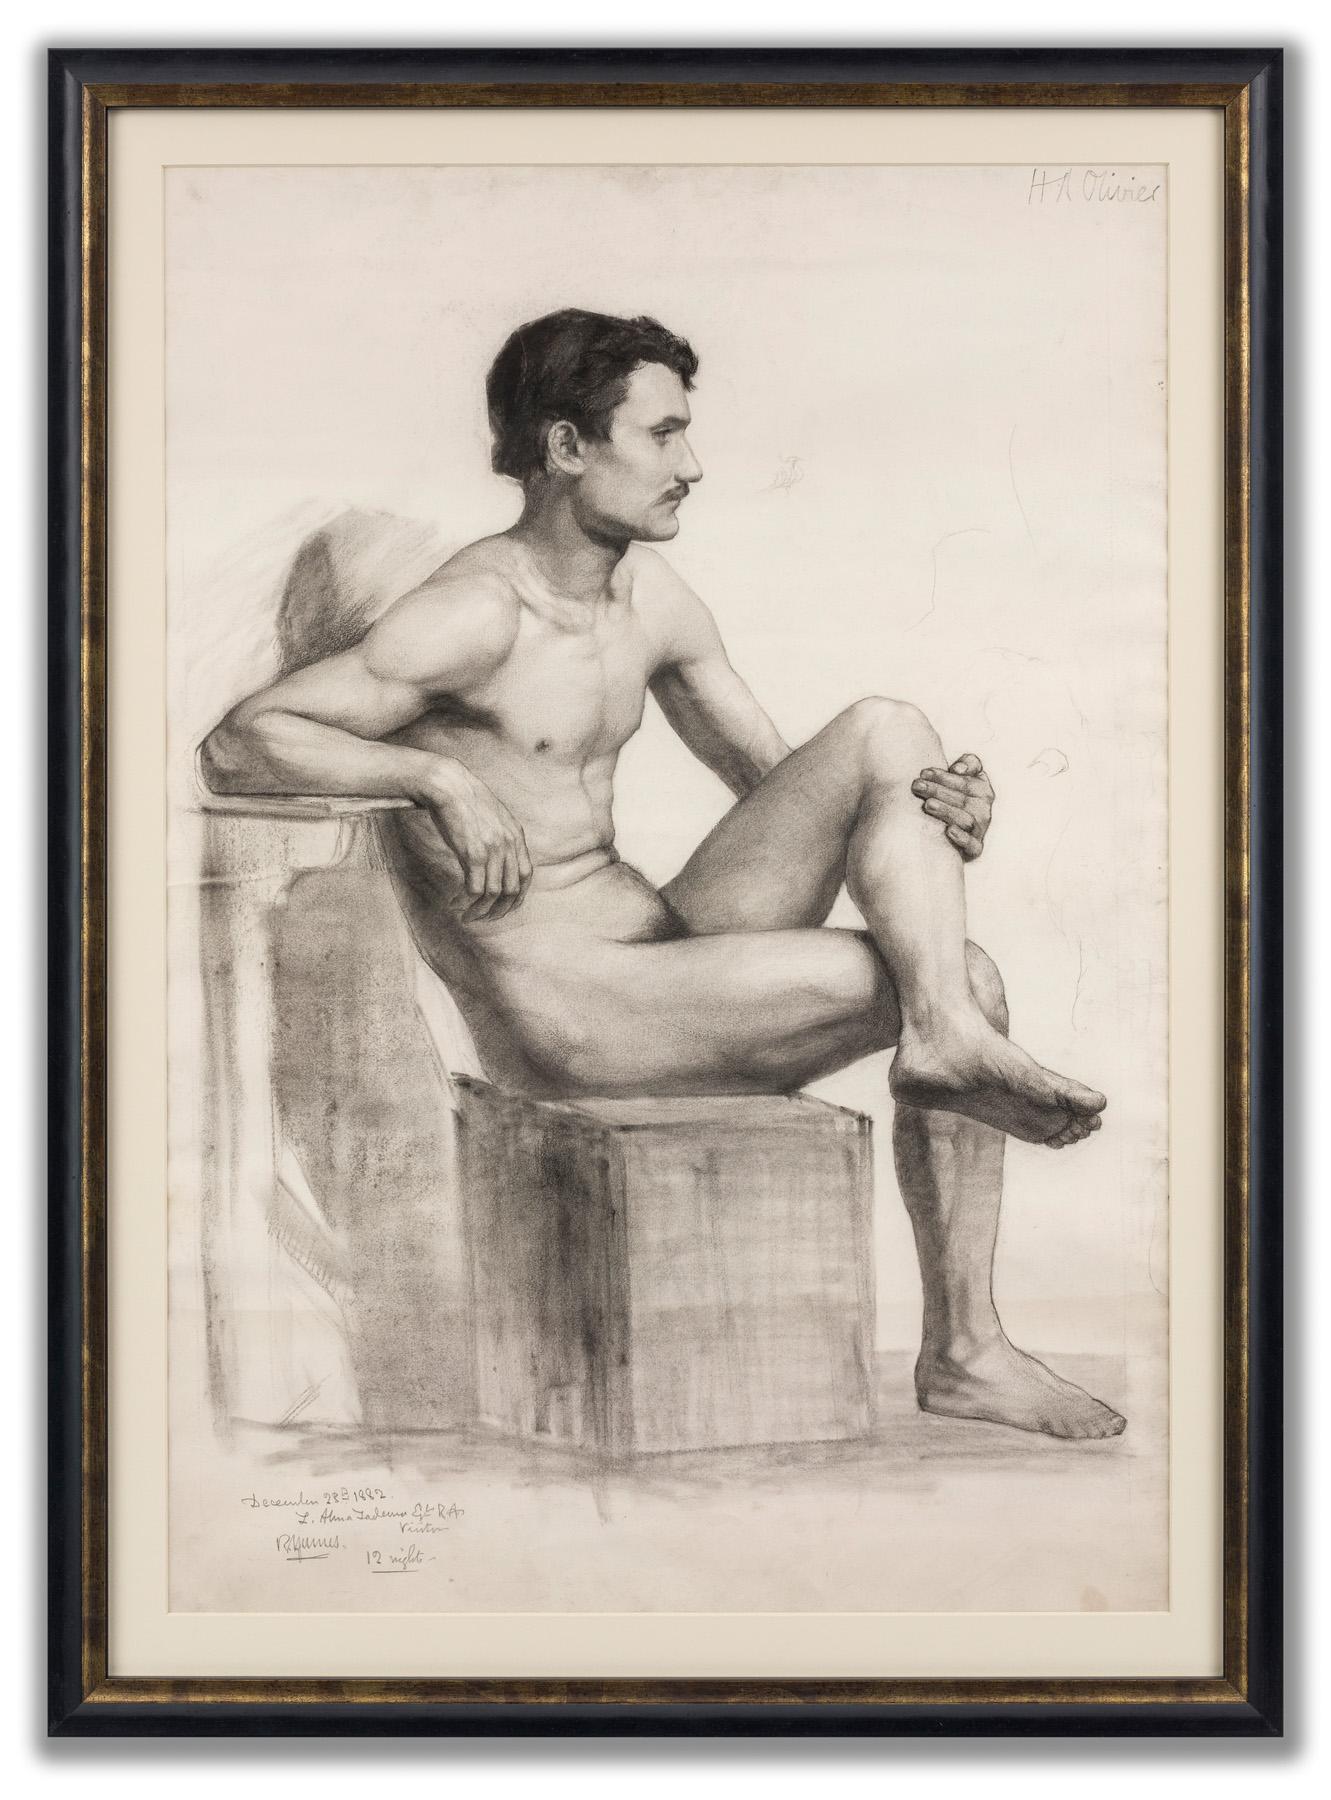 Men Nude Drawings and Watercolors